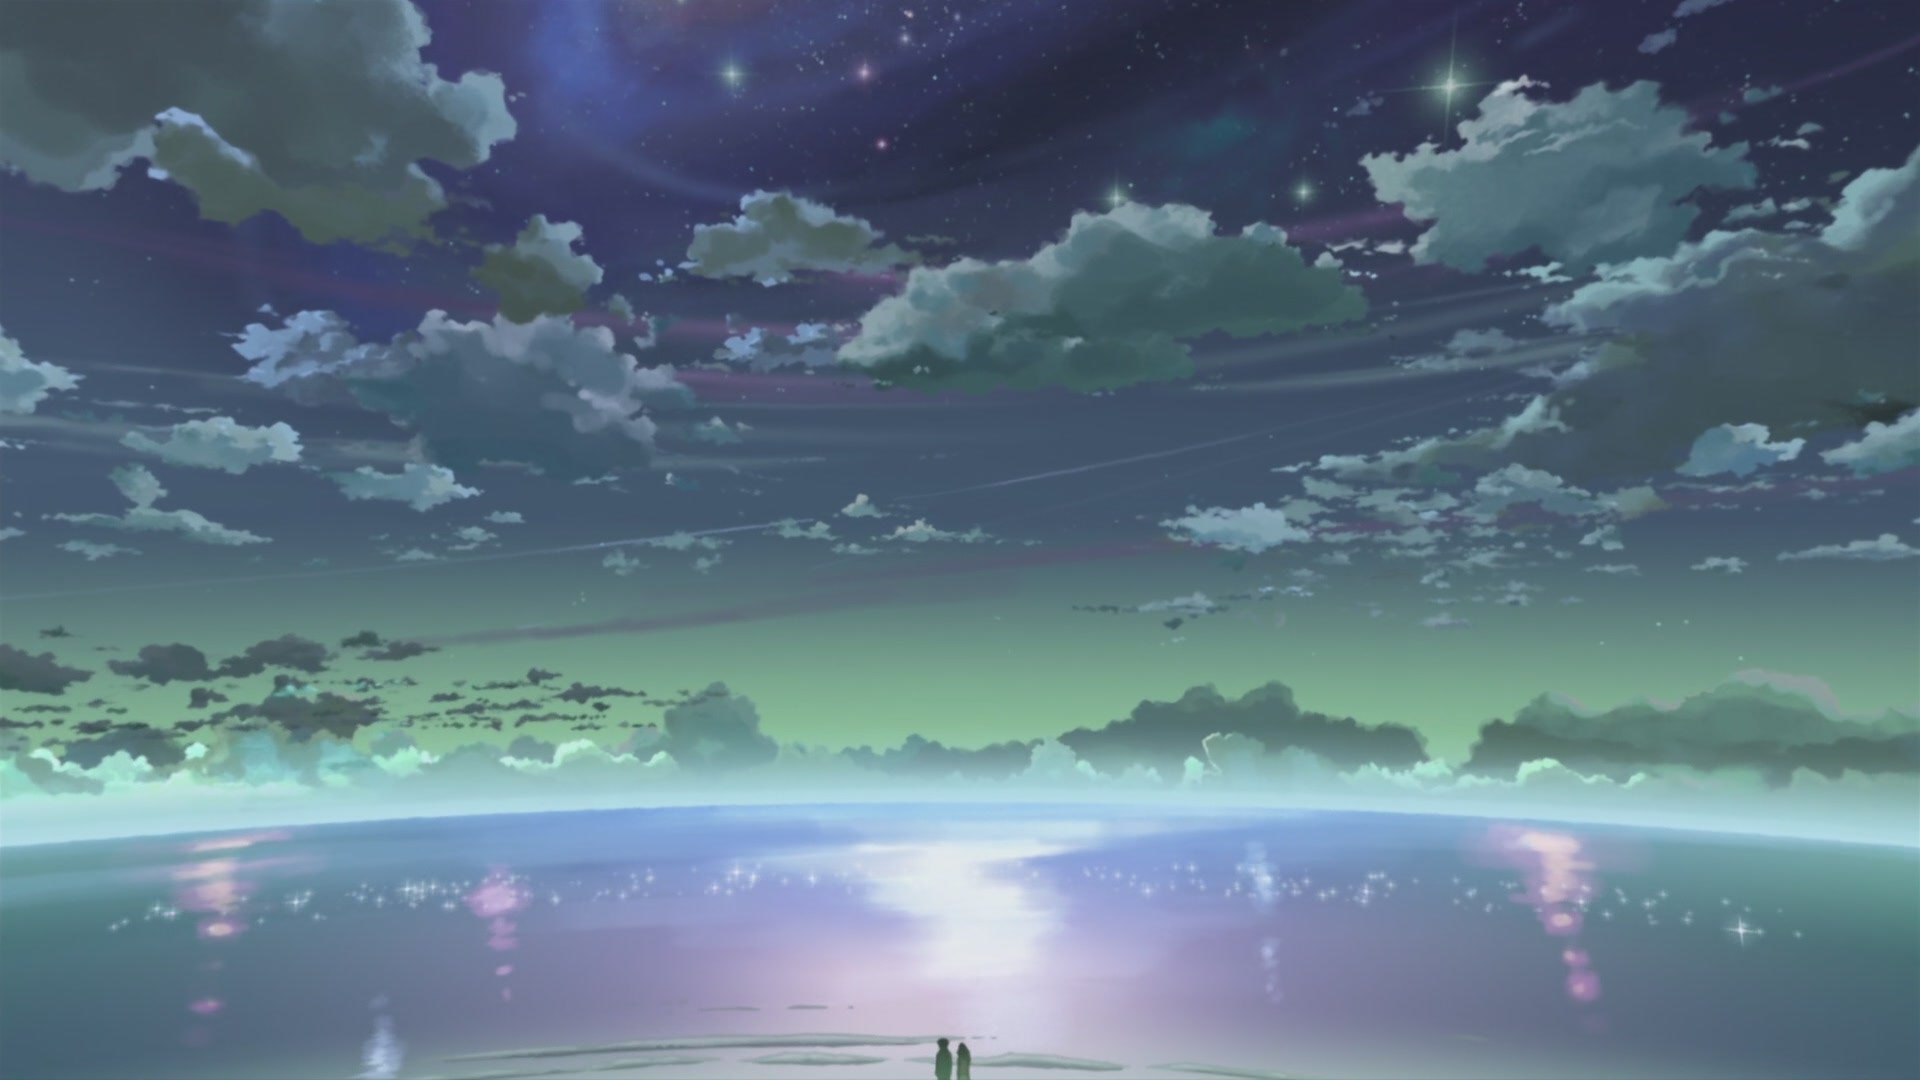 clouds, Makoto Shinkai, 5 Centimeters Per Second, skyscapes - desktop wallpaper